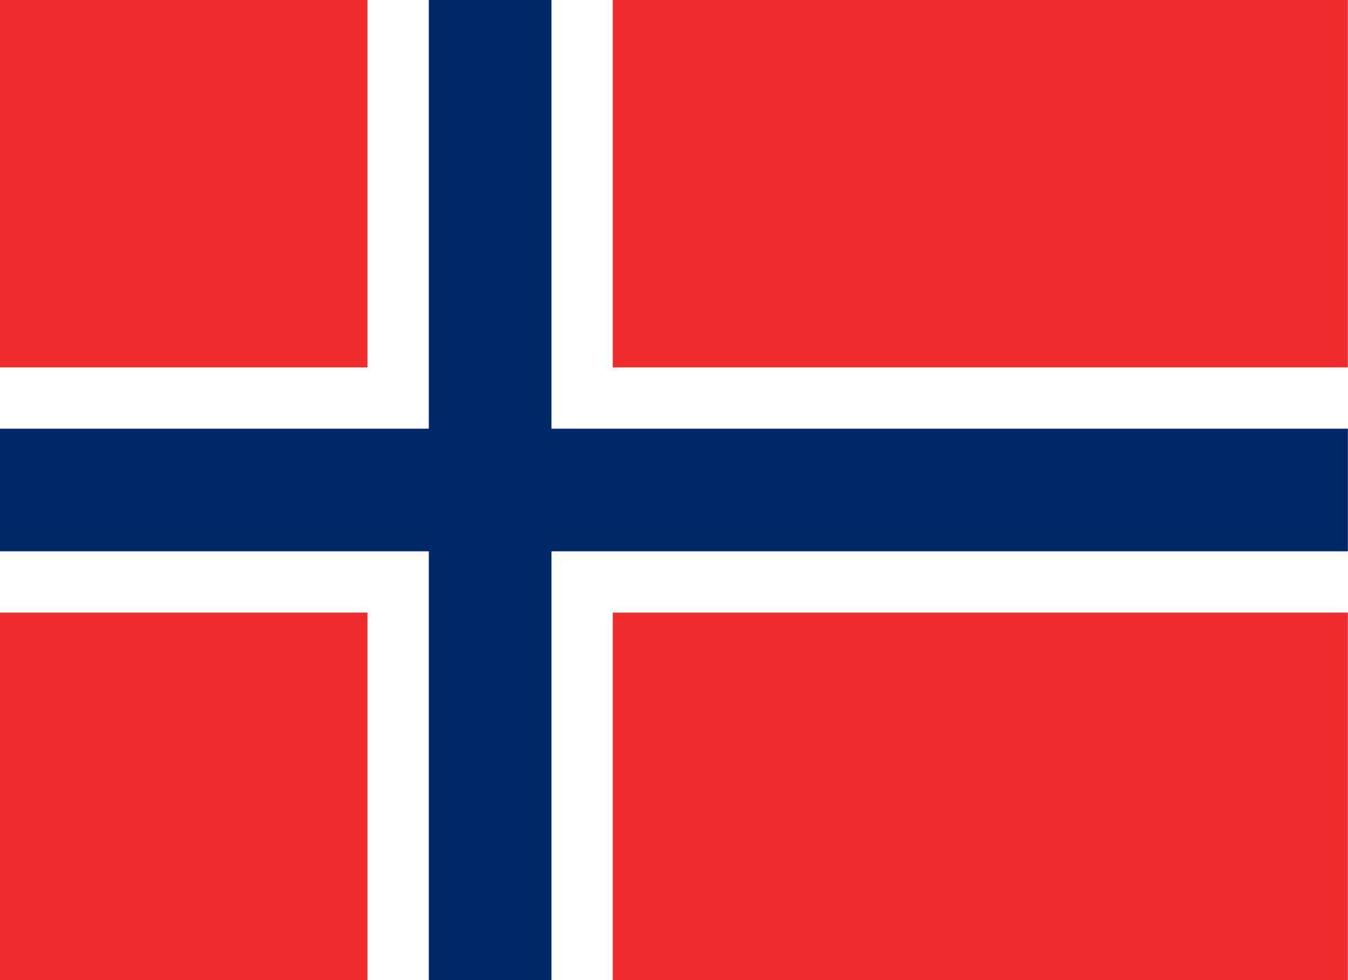 Noruega simples bandeira corrigir tamanho, proporção, cores. vetor